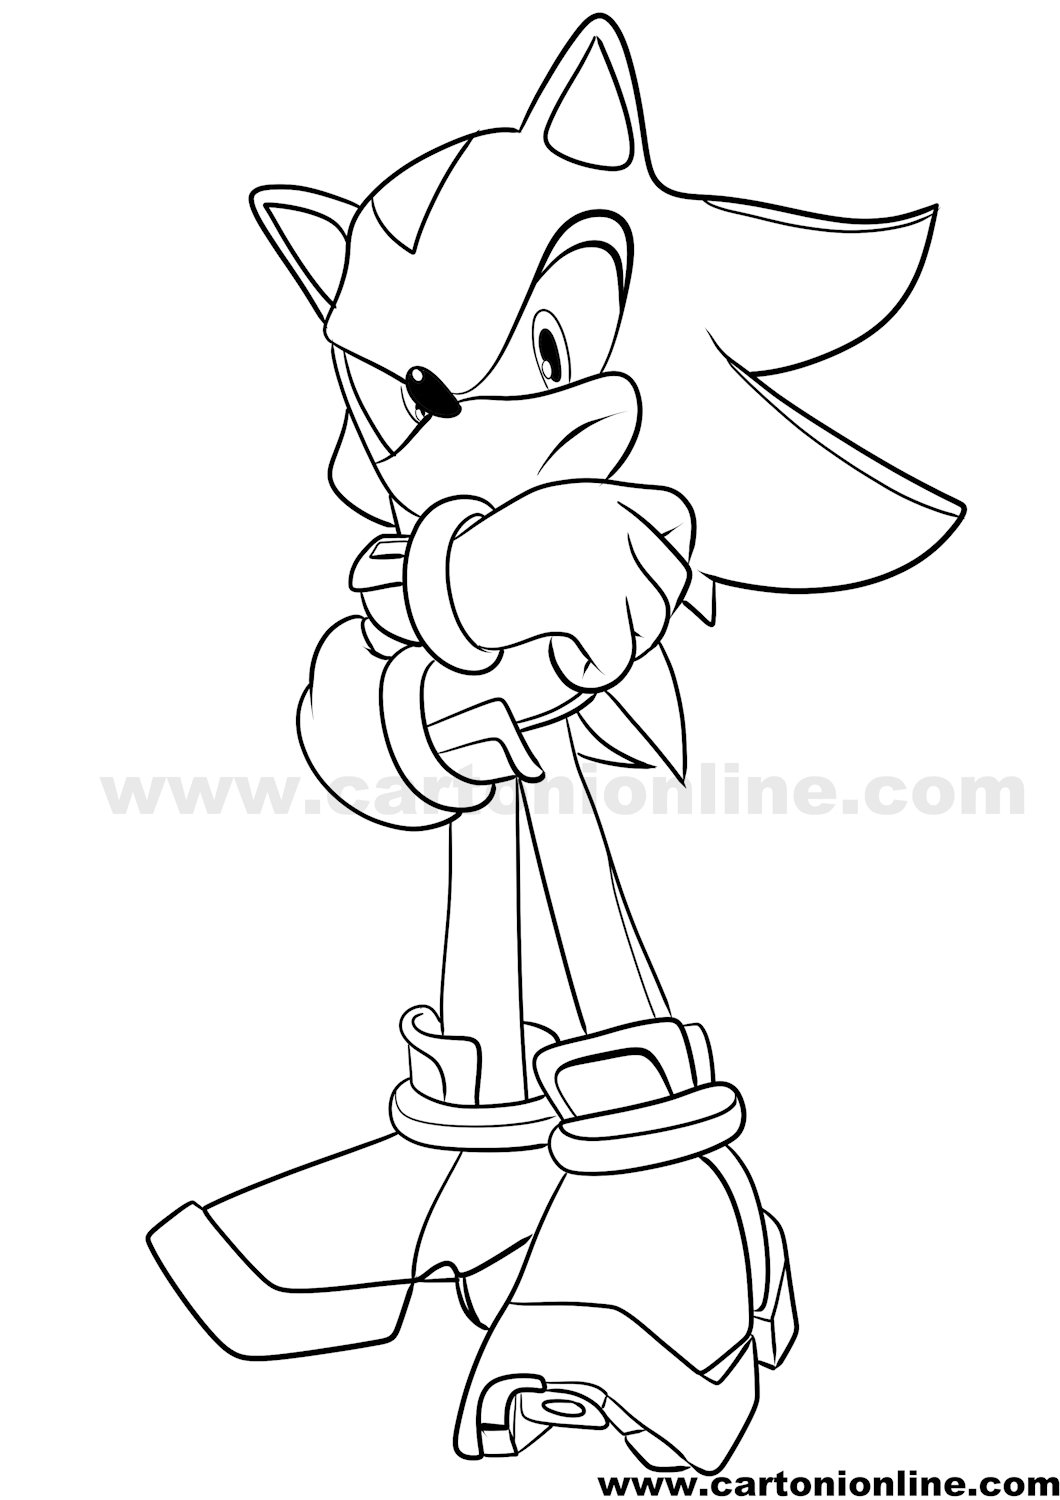 Disegno Shadow 01 di Sonic da stampare e colorare